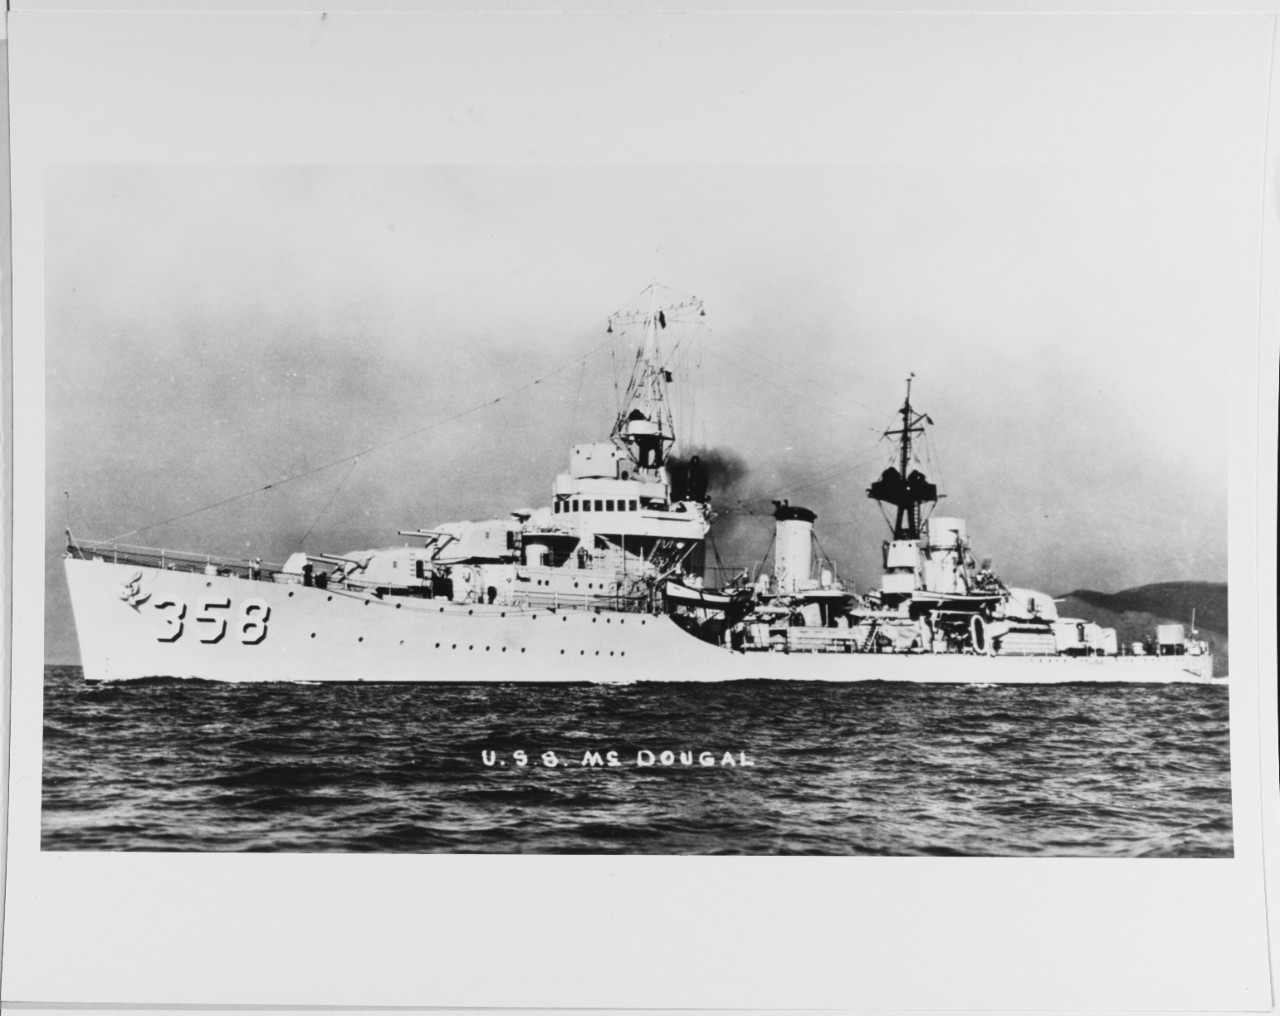 USS McDOUGAL (DD-358).